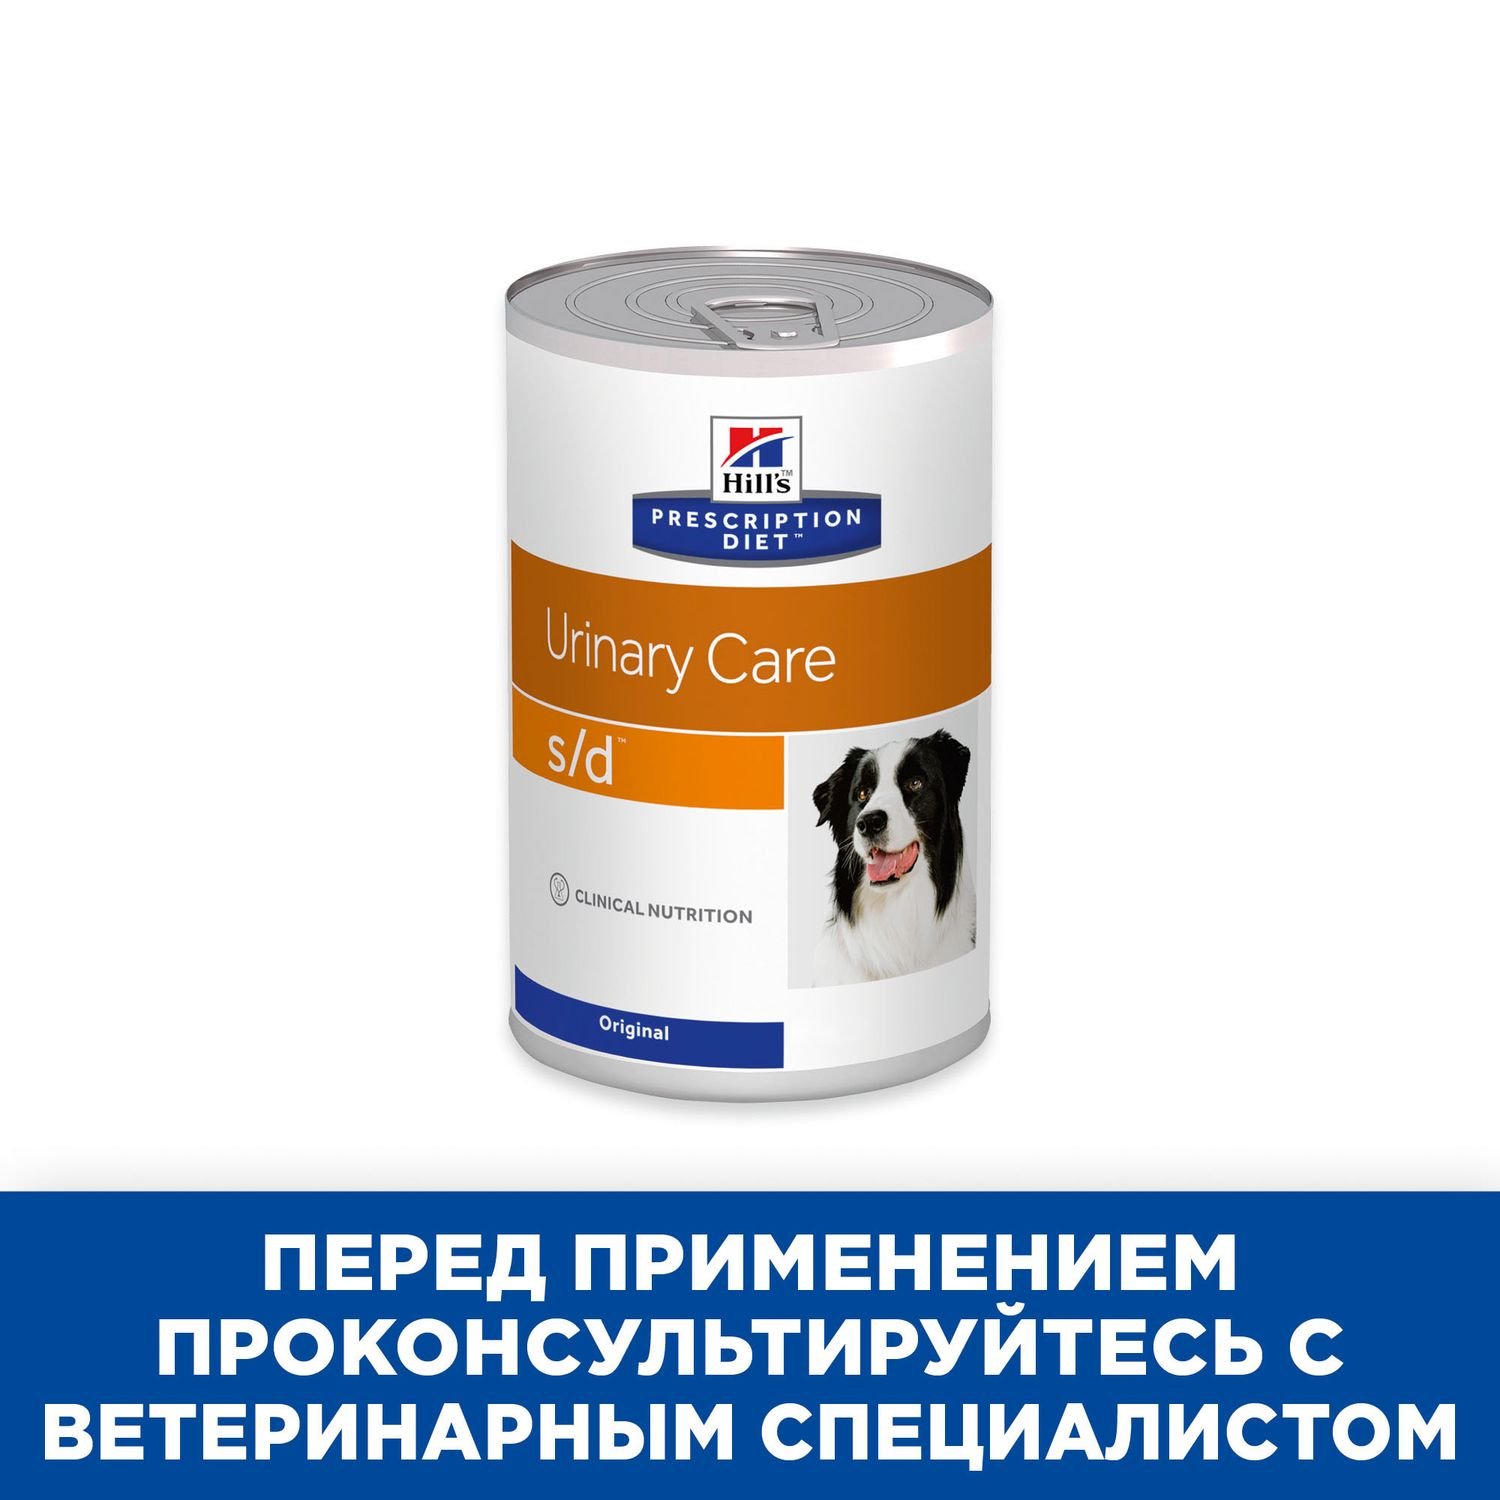 Корм для собак HILLS 370г Prescription Diet s/d UrinaryCare для мочевыводящих путей консервированный - фото 5